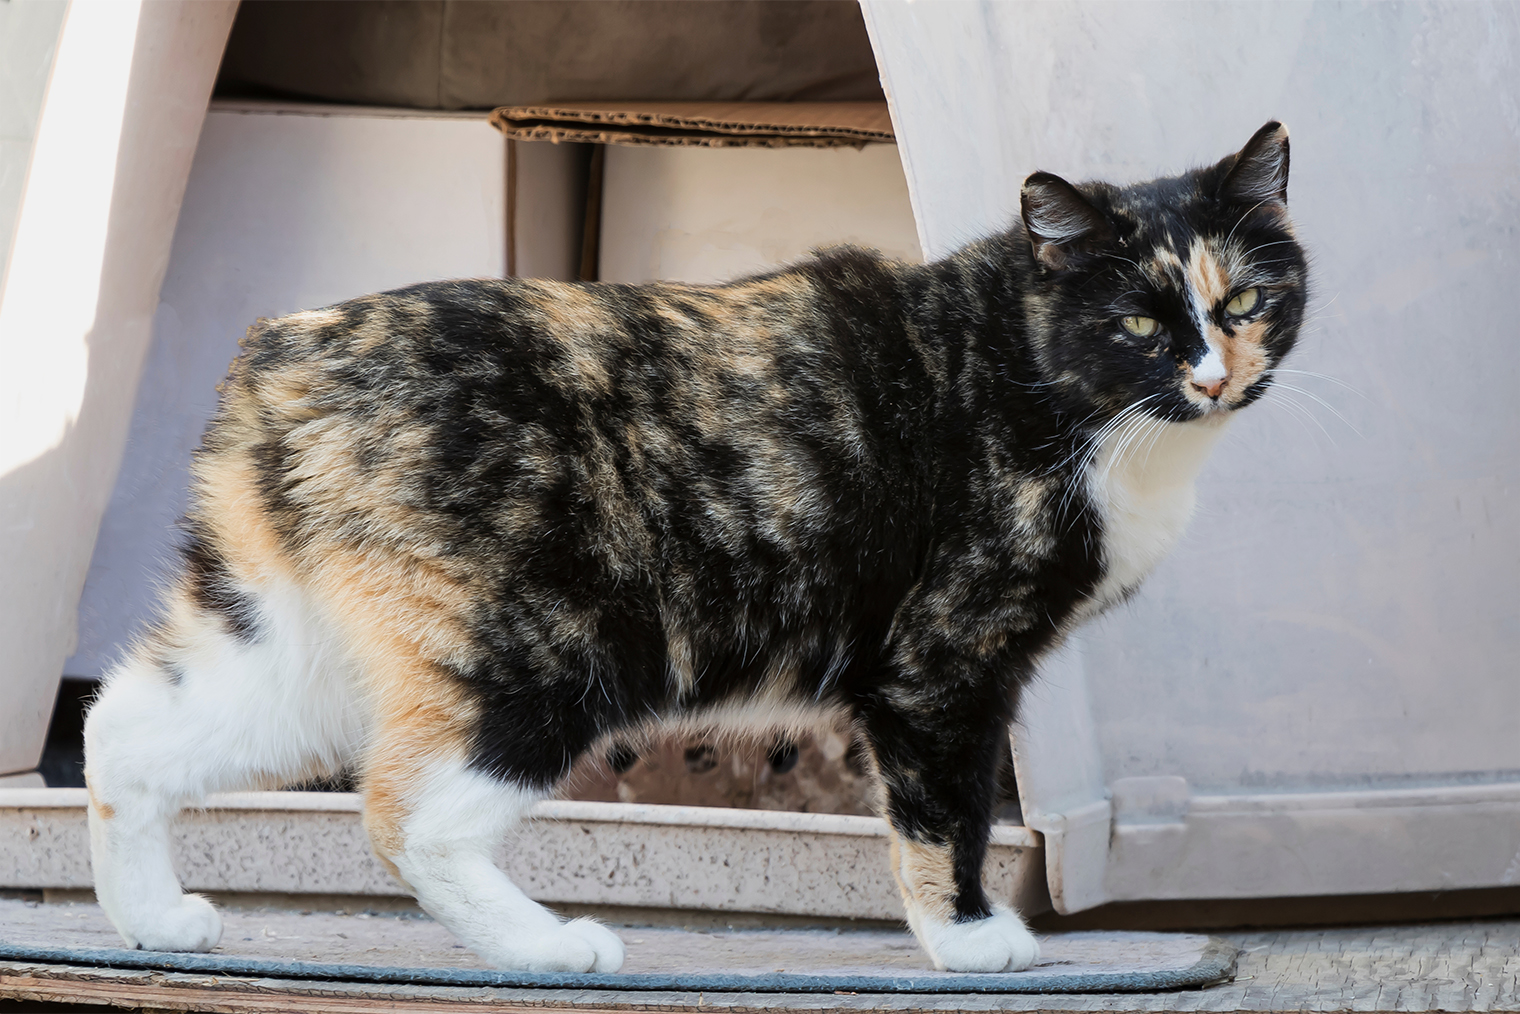 Мэнская порода кошек появилась на острове Мэн. Изоляция повлияла на закрепление генетической мутации: у многих представителей породы нет хвоста. Фотография: PradaBrownk / Shutterstock / FOTODOM